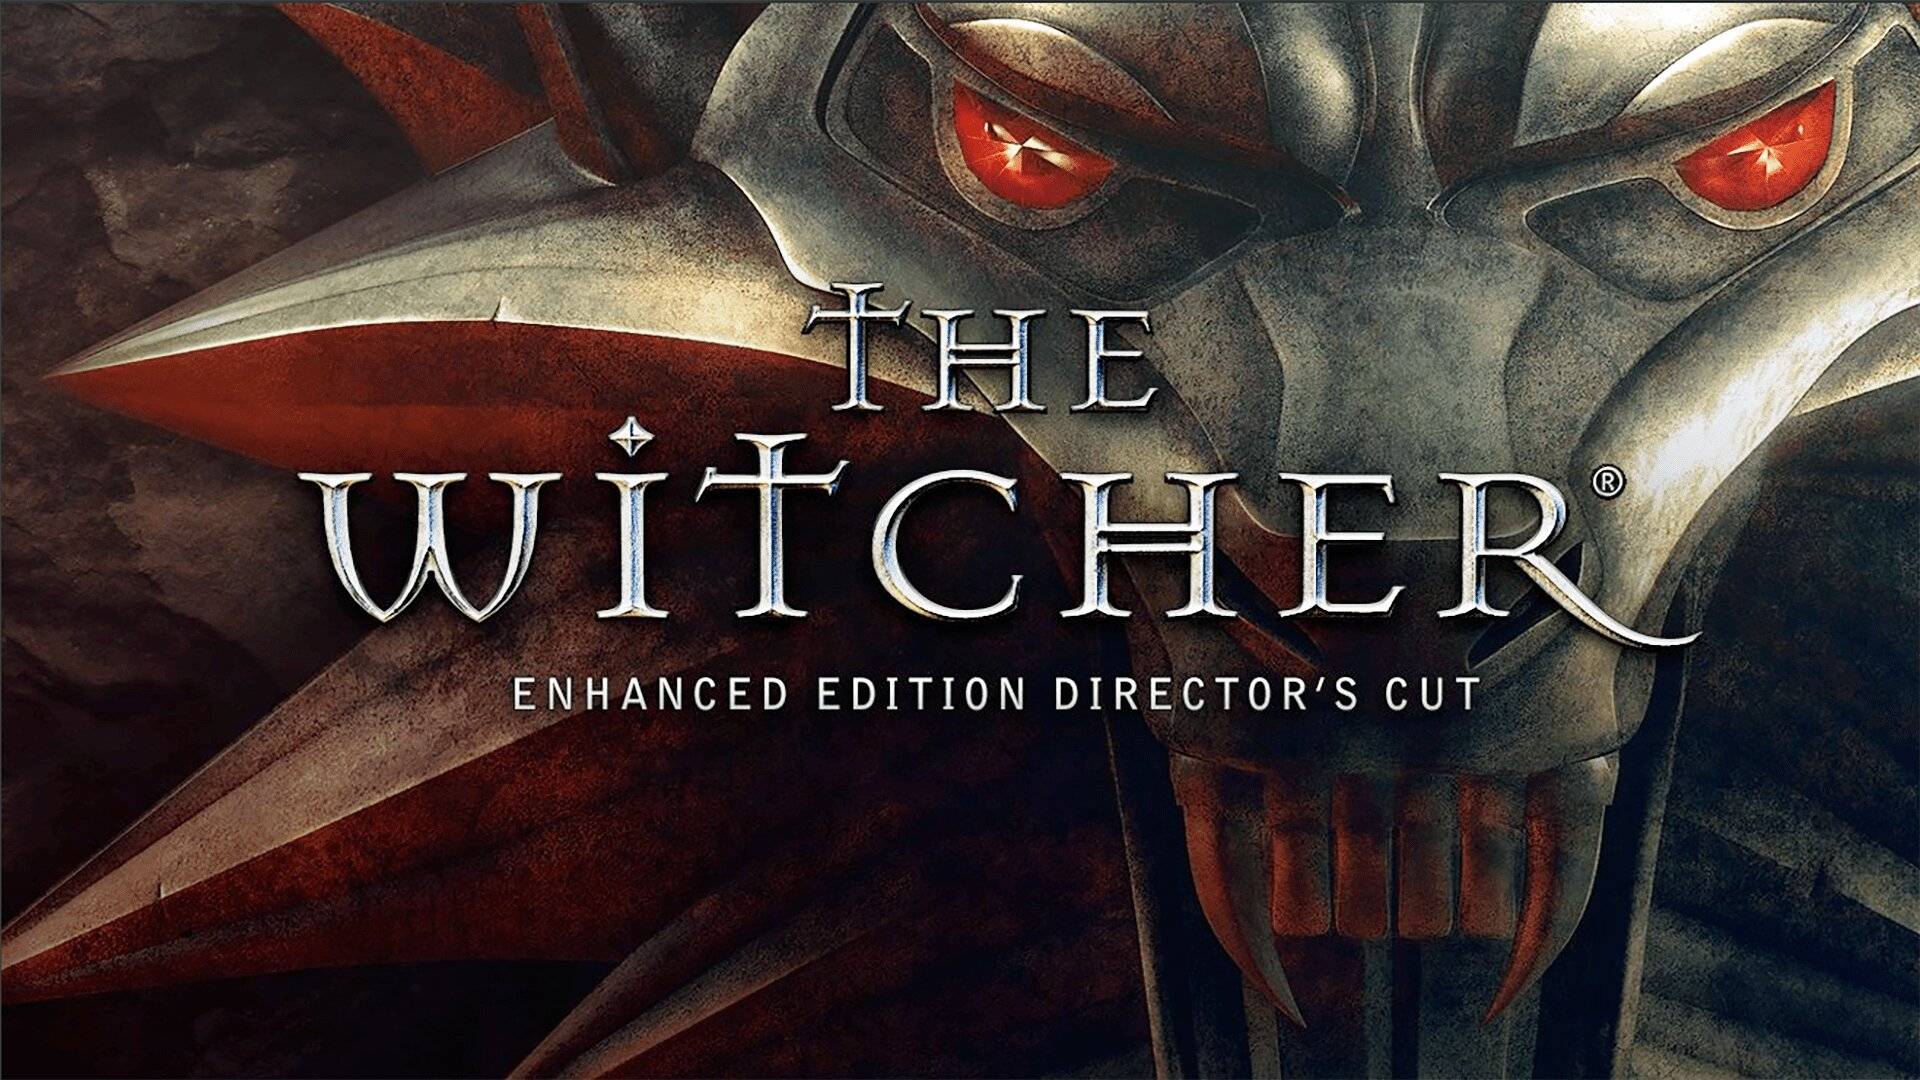 Я УЗНАЛ КАК ВАРИТЬ М.. ▣ The Witcher Enhanced Edition Director's Cut #9